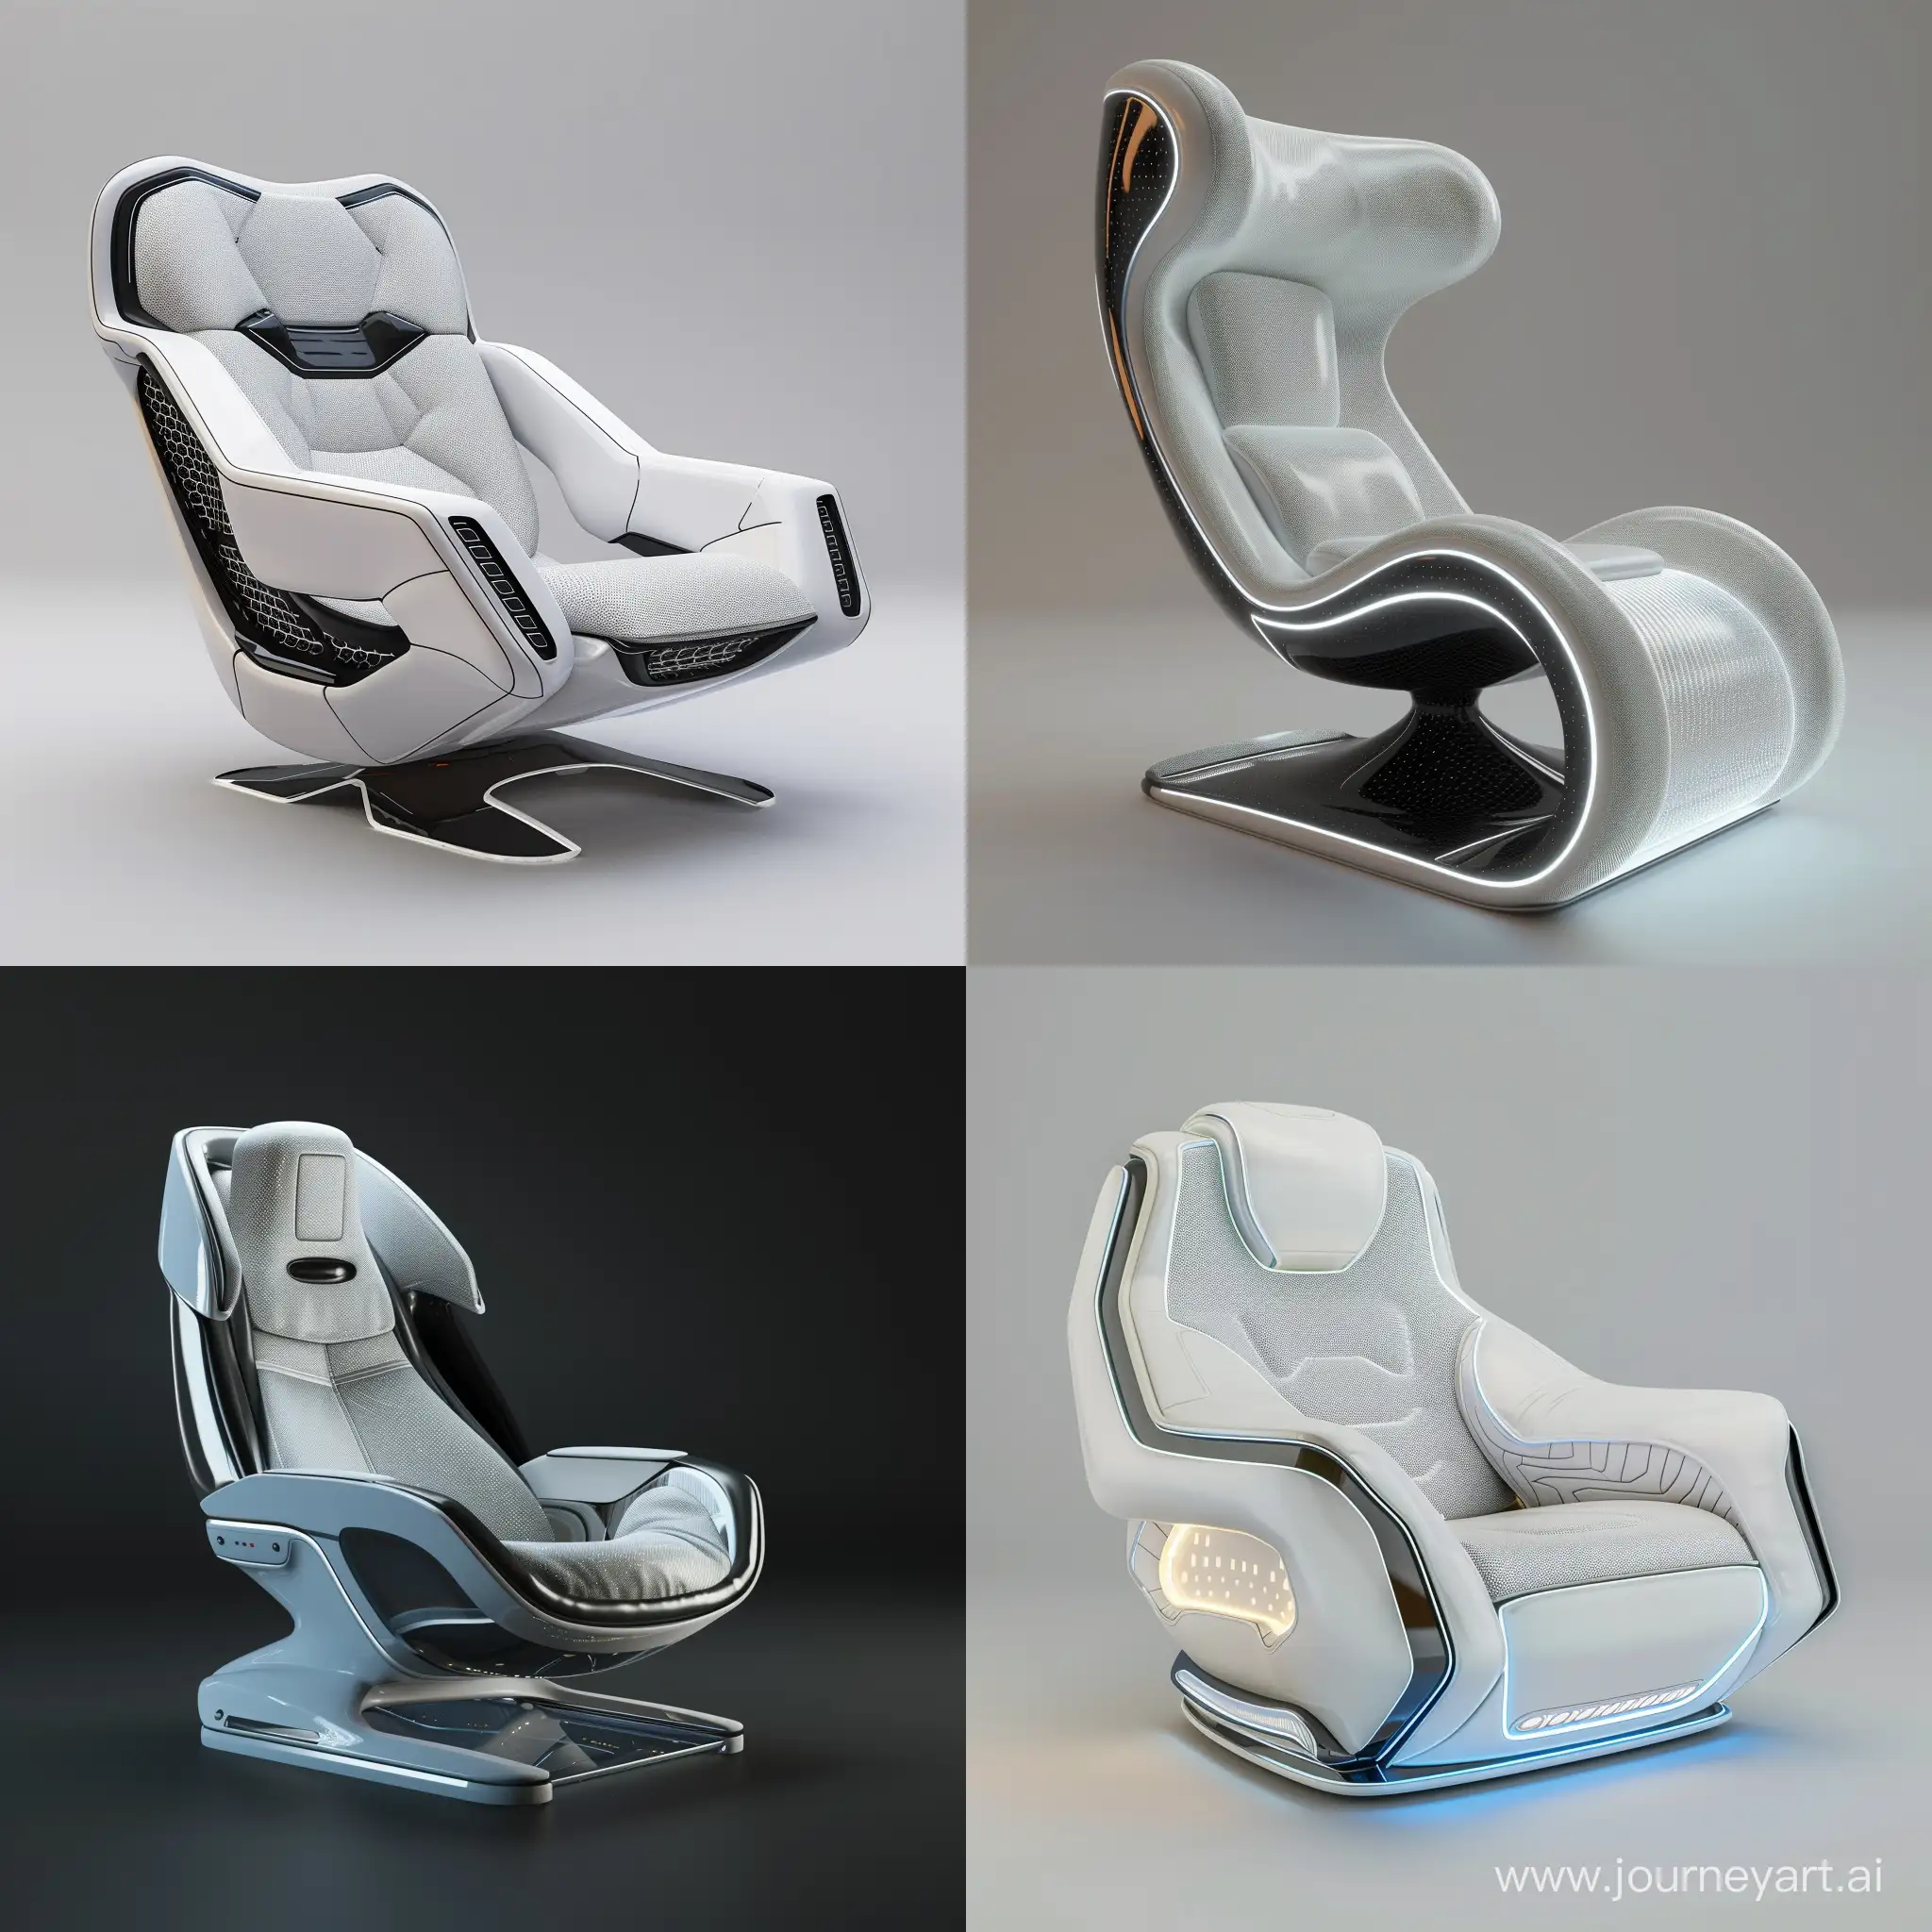 Futuristic armchair, world of high tech, octane render